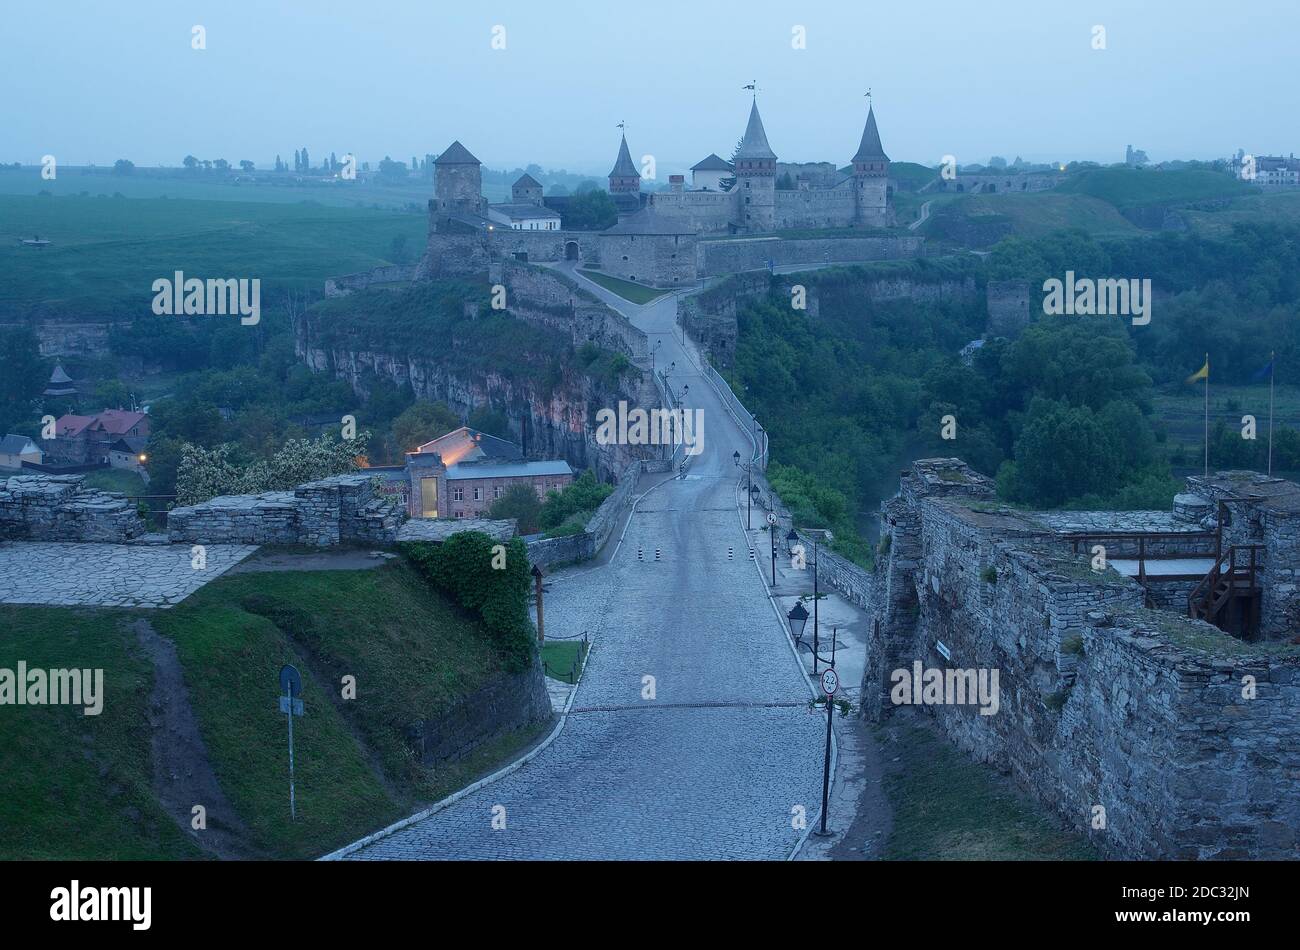 Road leading to the medieval castle. Fortification historical landmark. Cityscape at dusk. Kamenetz-Podolsk, Ukraine, Europe Stock Photo